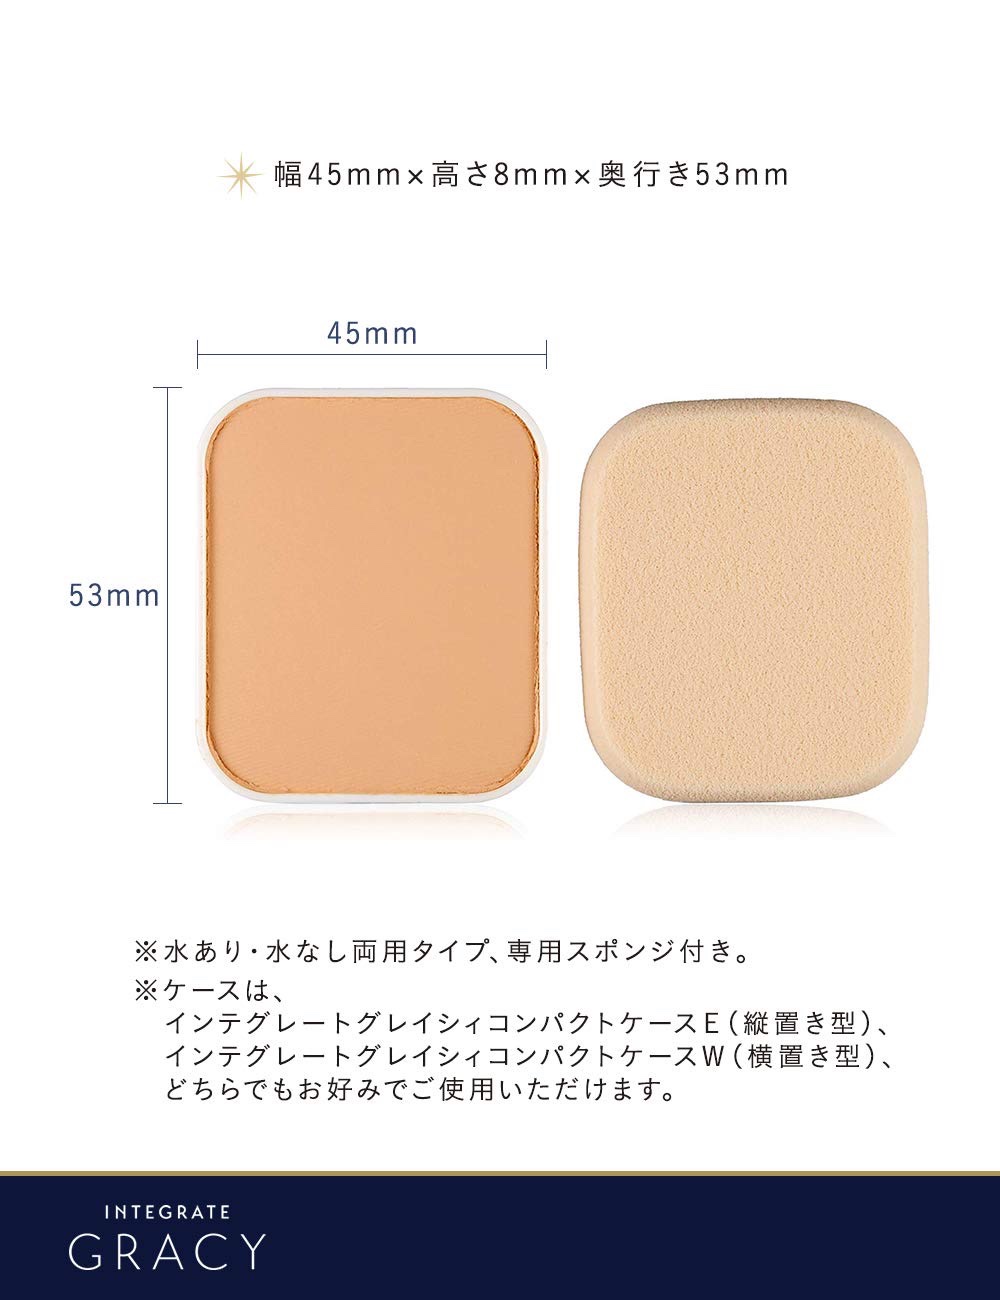 日本本土代购 资生堂INTEGRATE完美意境 粉饼OC10 OC20限定装 - 图3